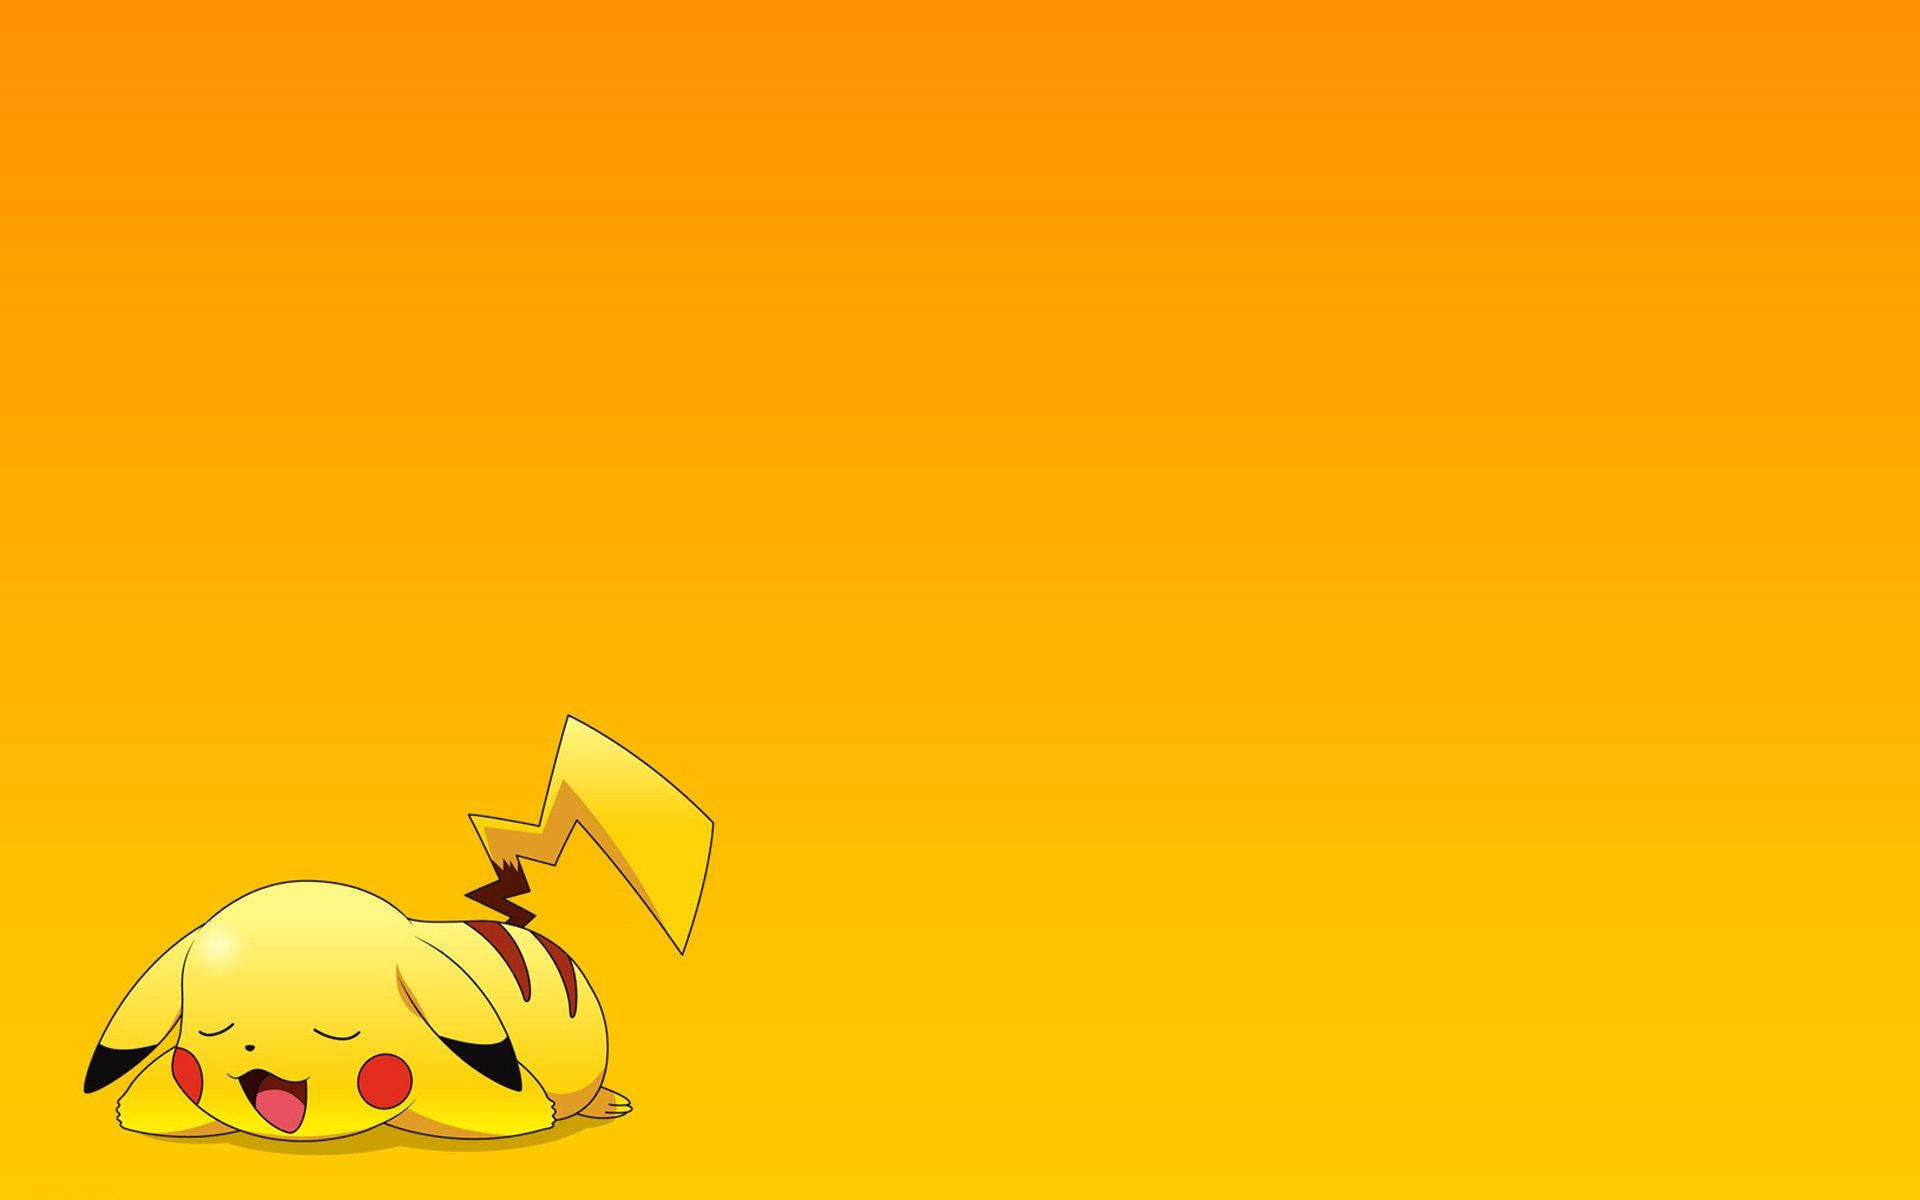 Pikachu 3d Soundly Resting Pokémon